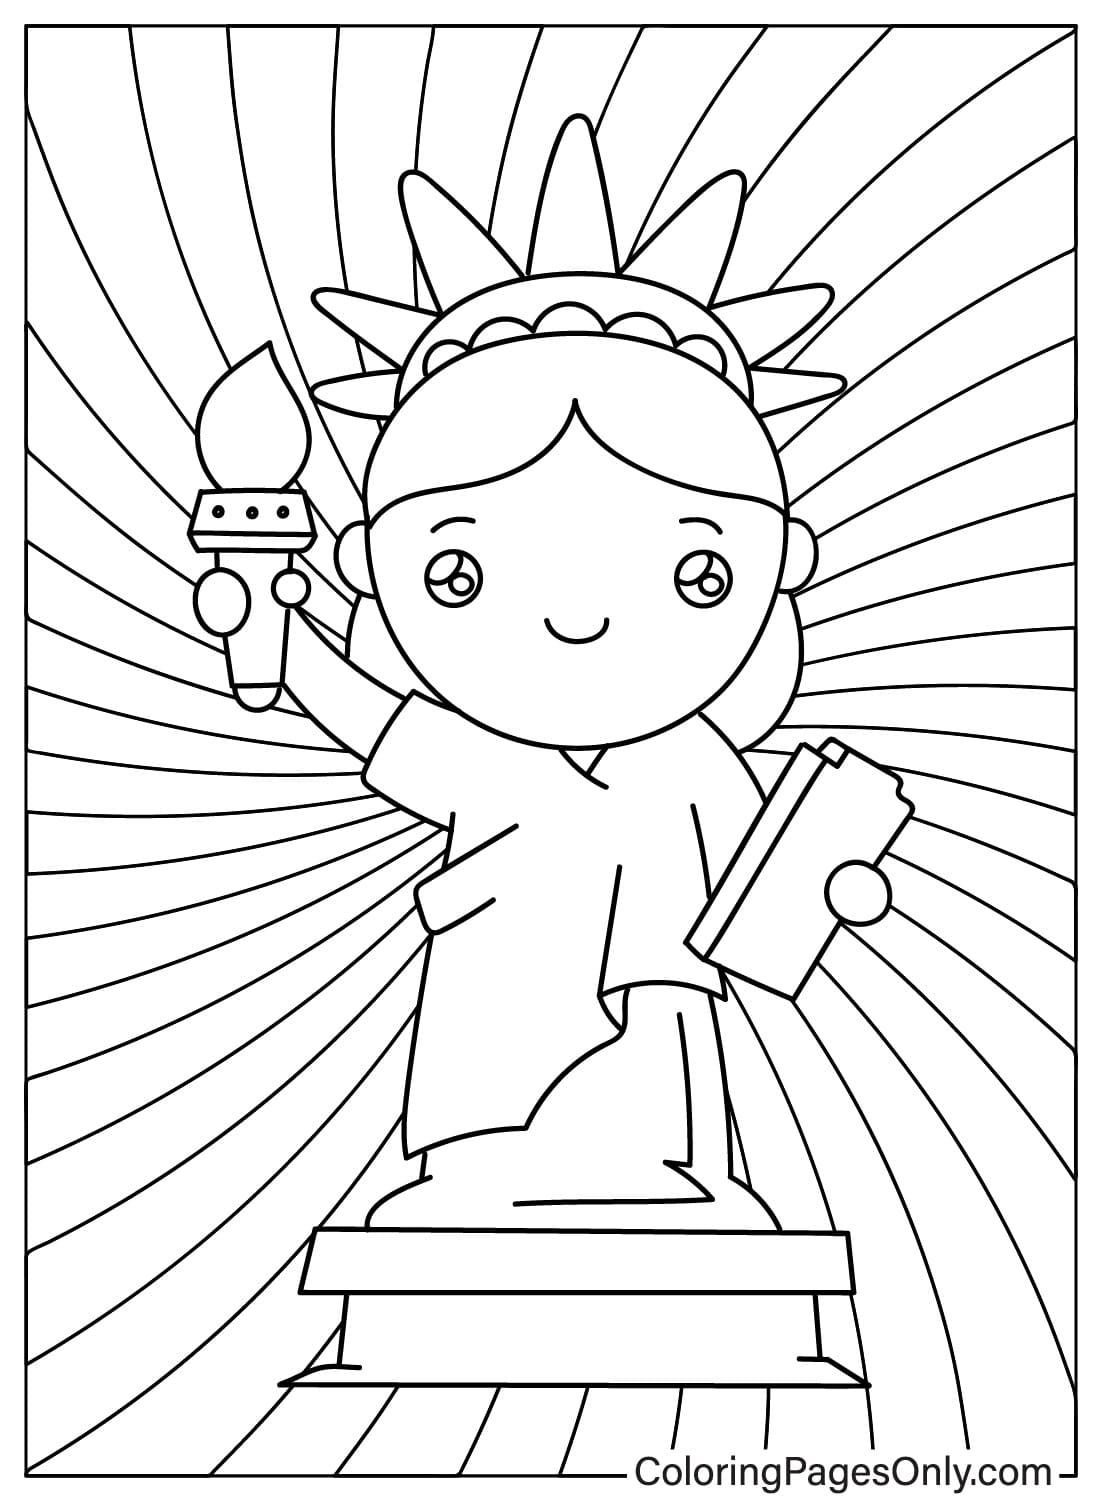 Página para colorear de la Estatua de la Libertad de Chibi de Estatua de la Libertad